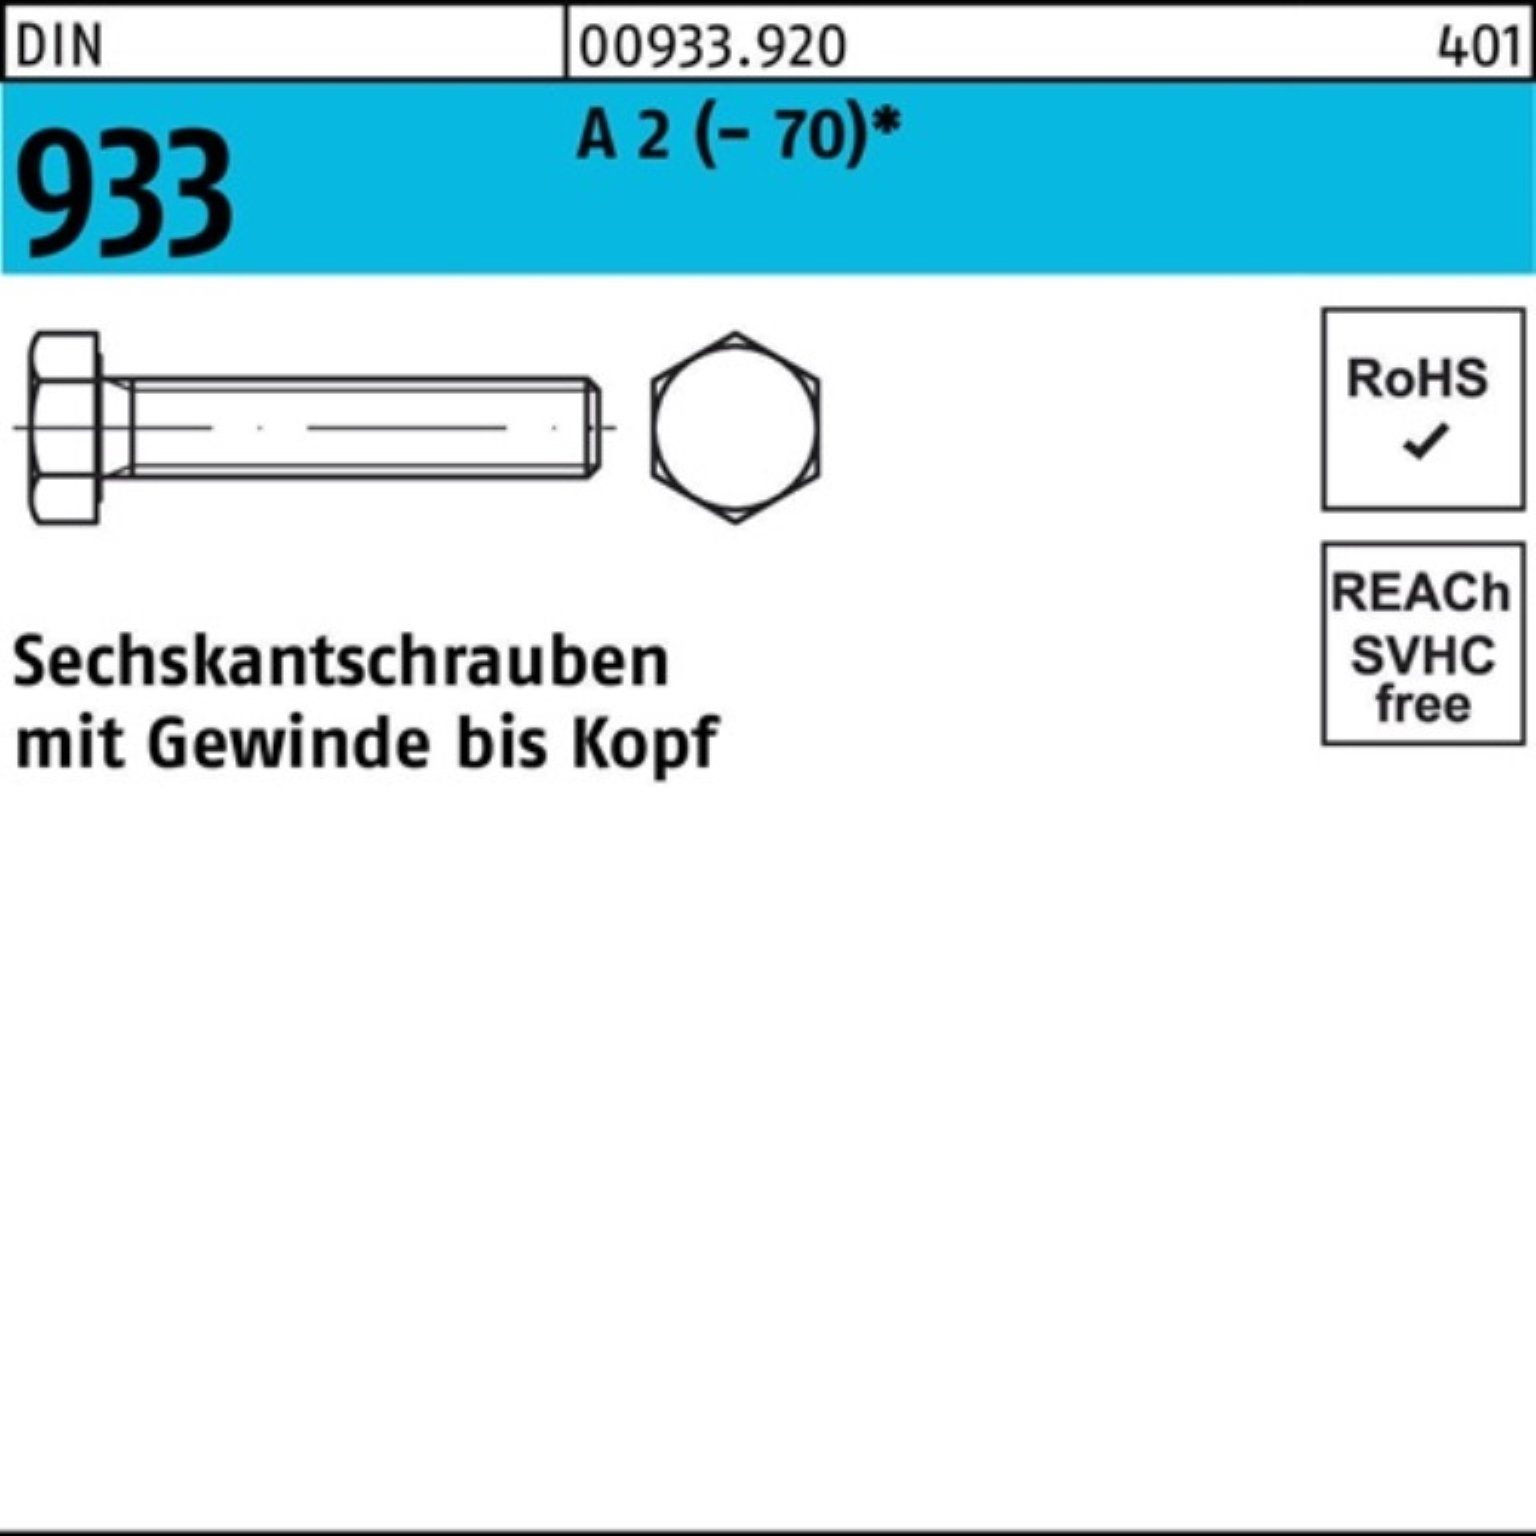 Reyher Sechskantschraube 200er Pack Sechskantschraube DIN 933 VG M6x 18 A 2 (70) 200 Stück D